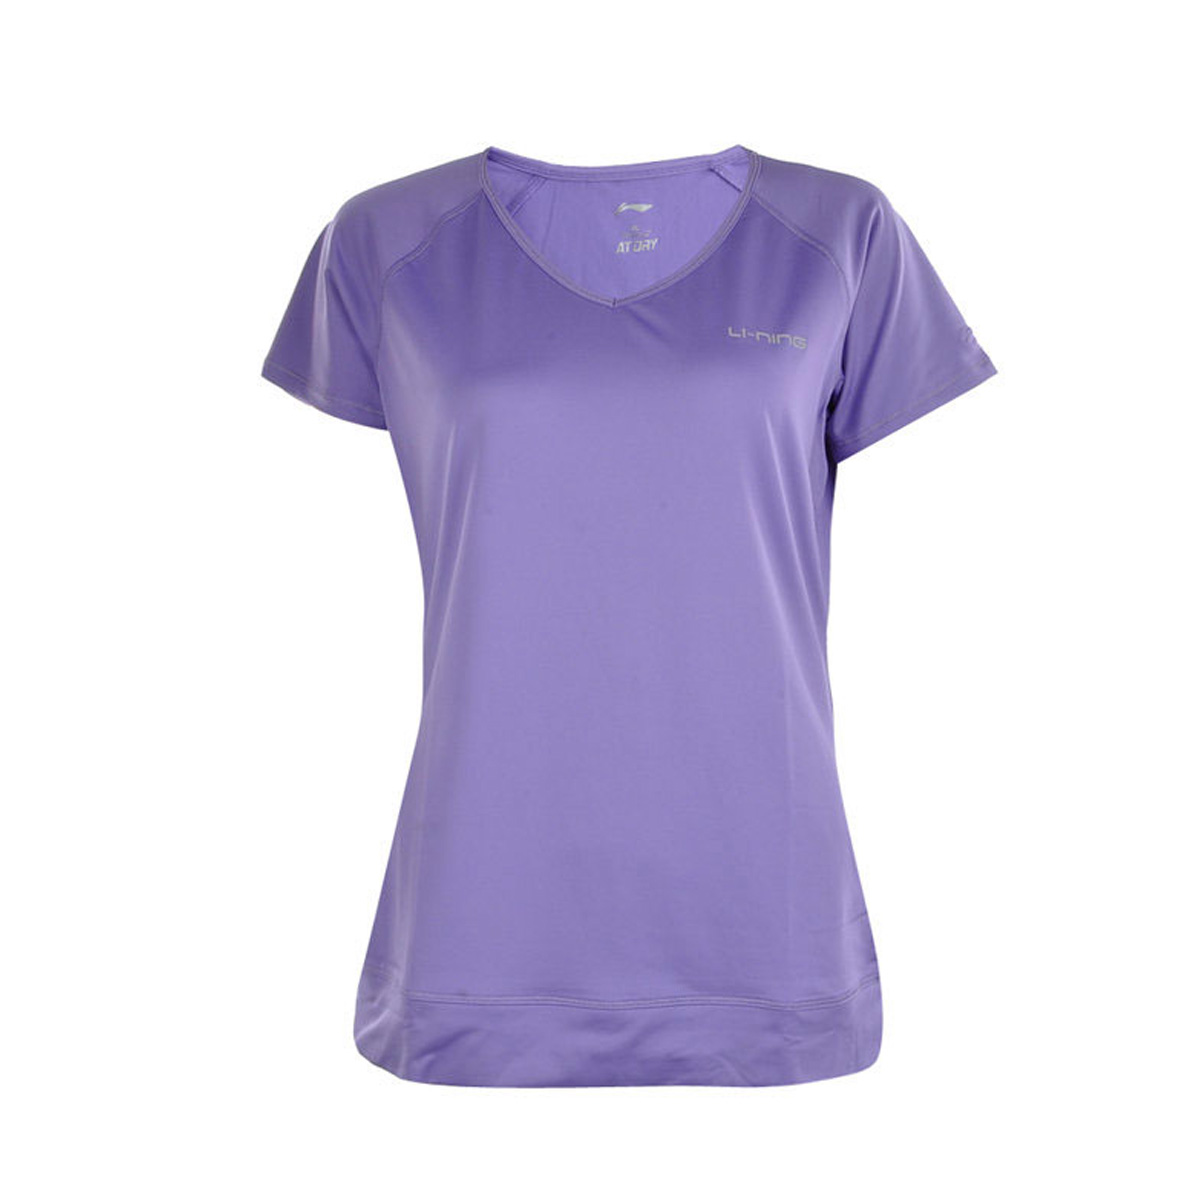 Женская футболка LI-NING ATSH246-6 (размер: S, M, XL). 